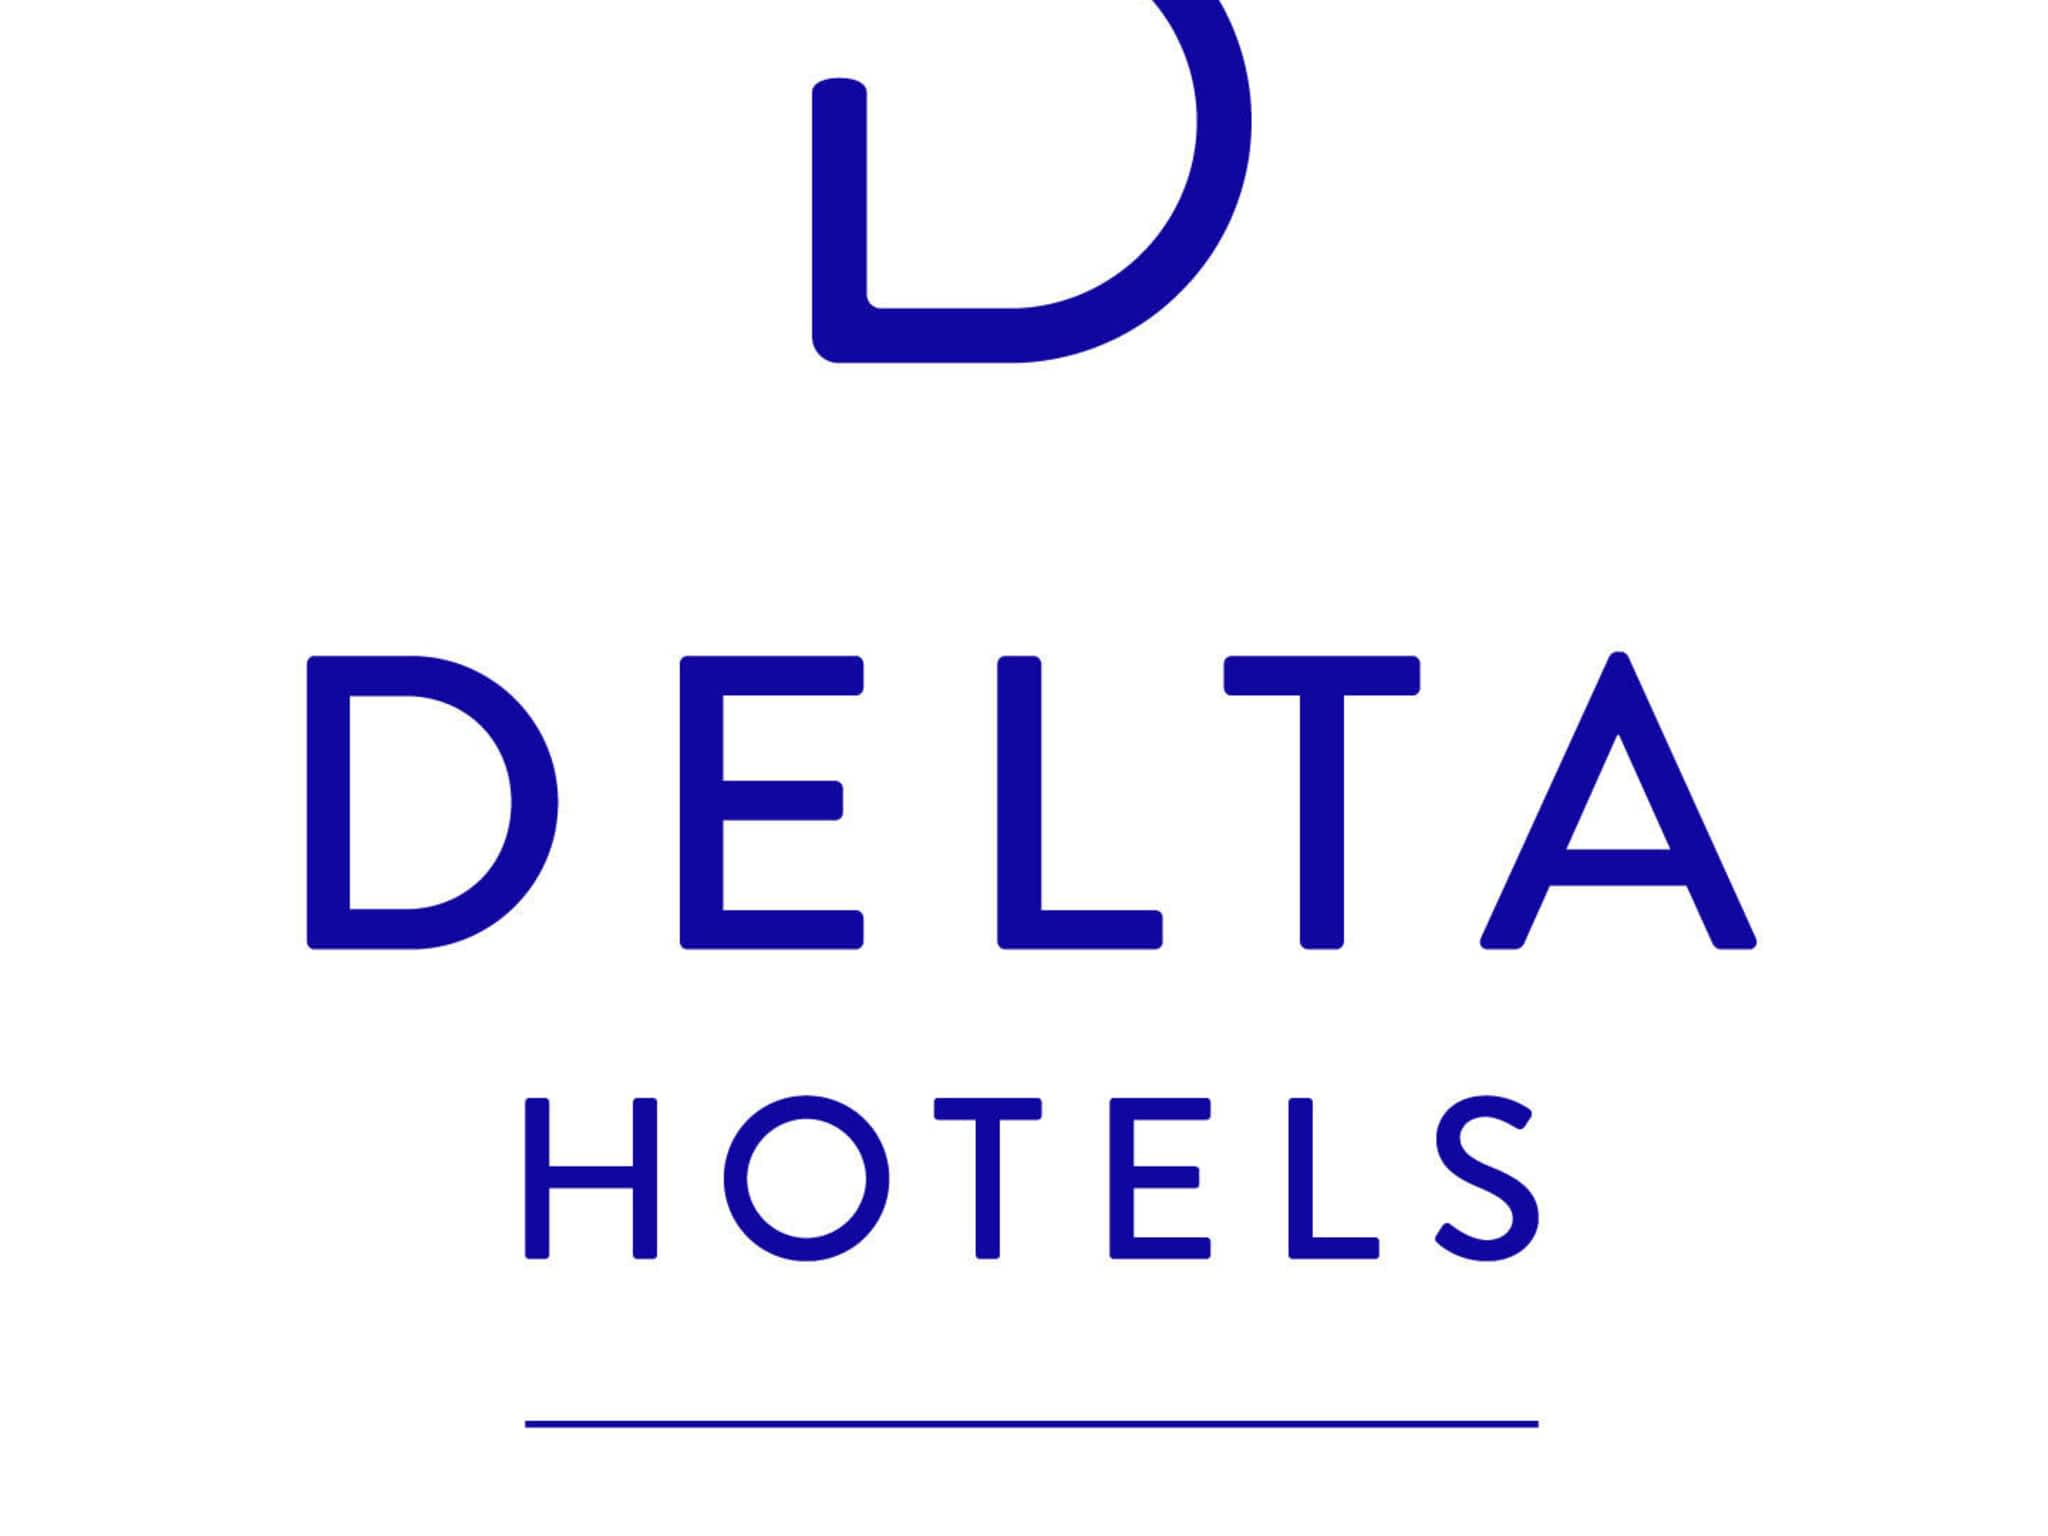 photo Delta Hotels by Marriott Edmonton Centre Suites